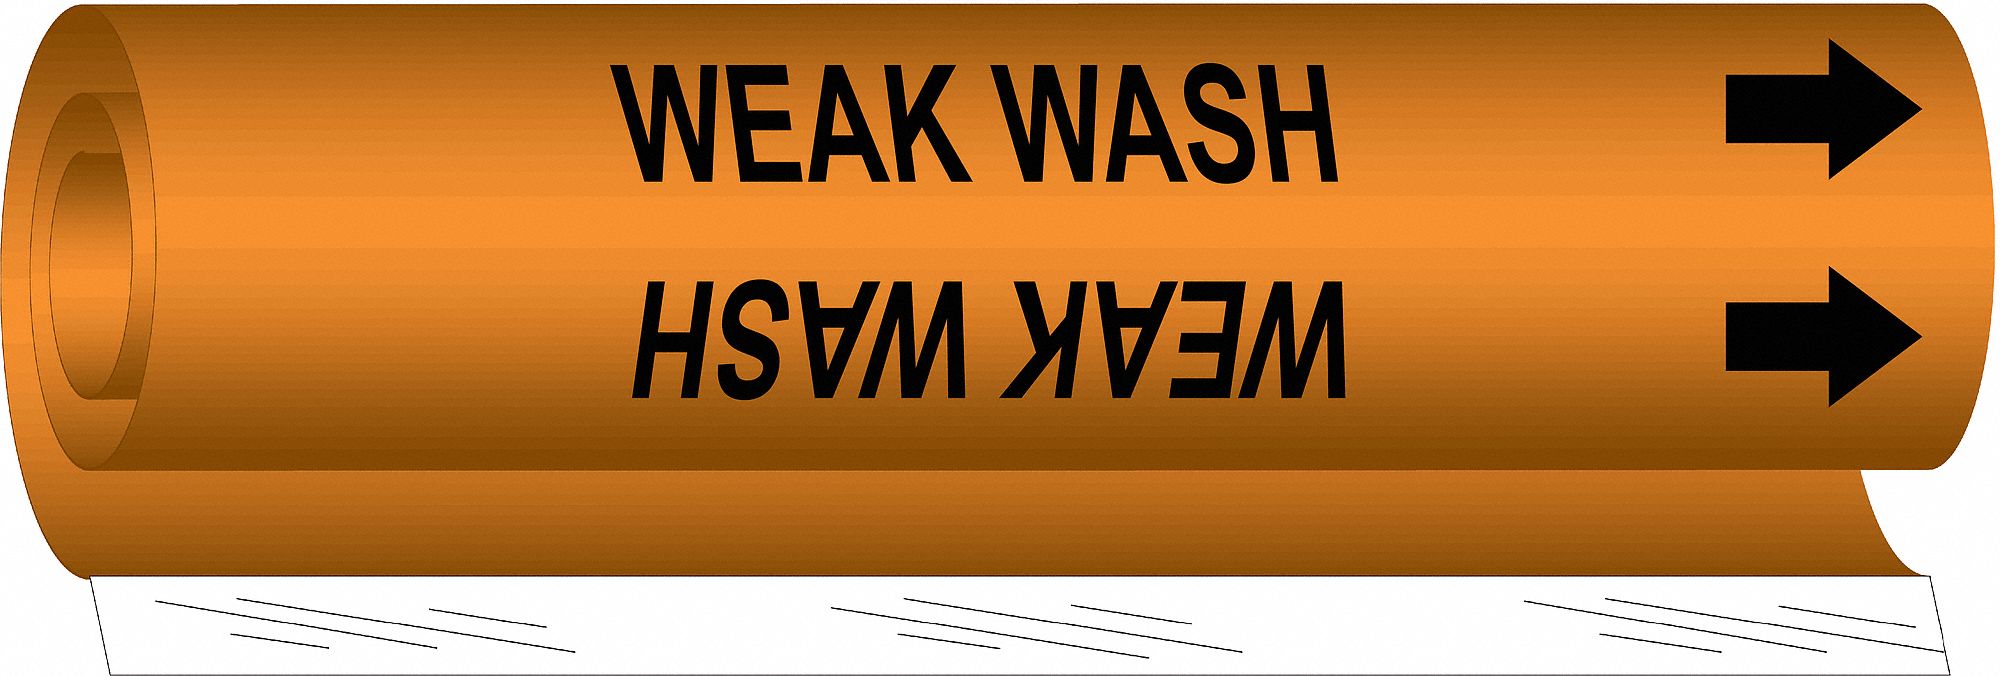 Pipe Marker,Weak Wash